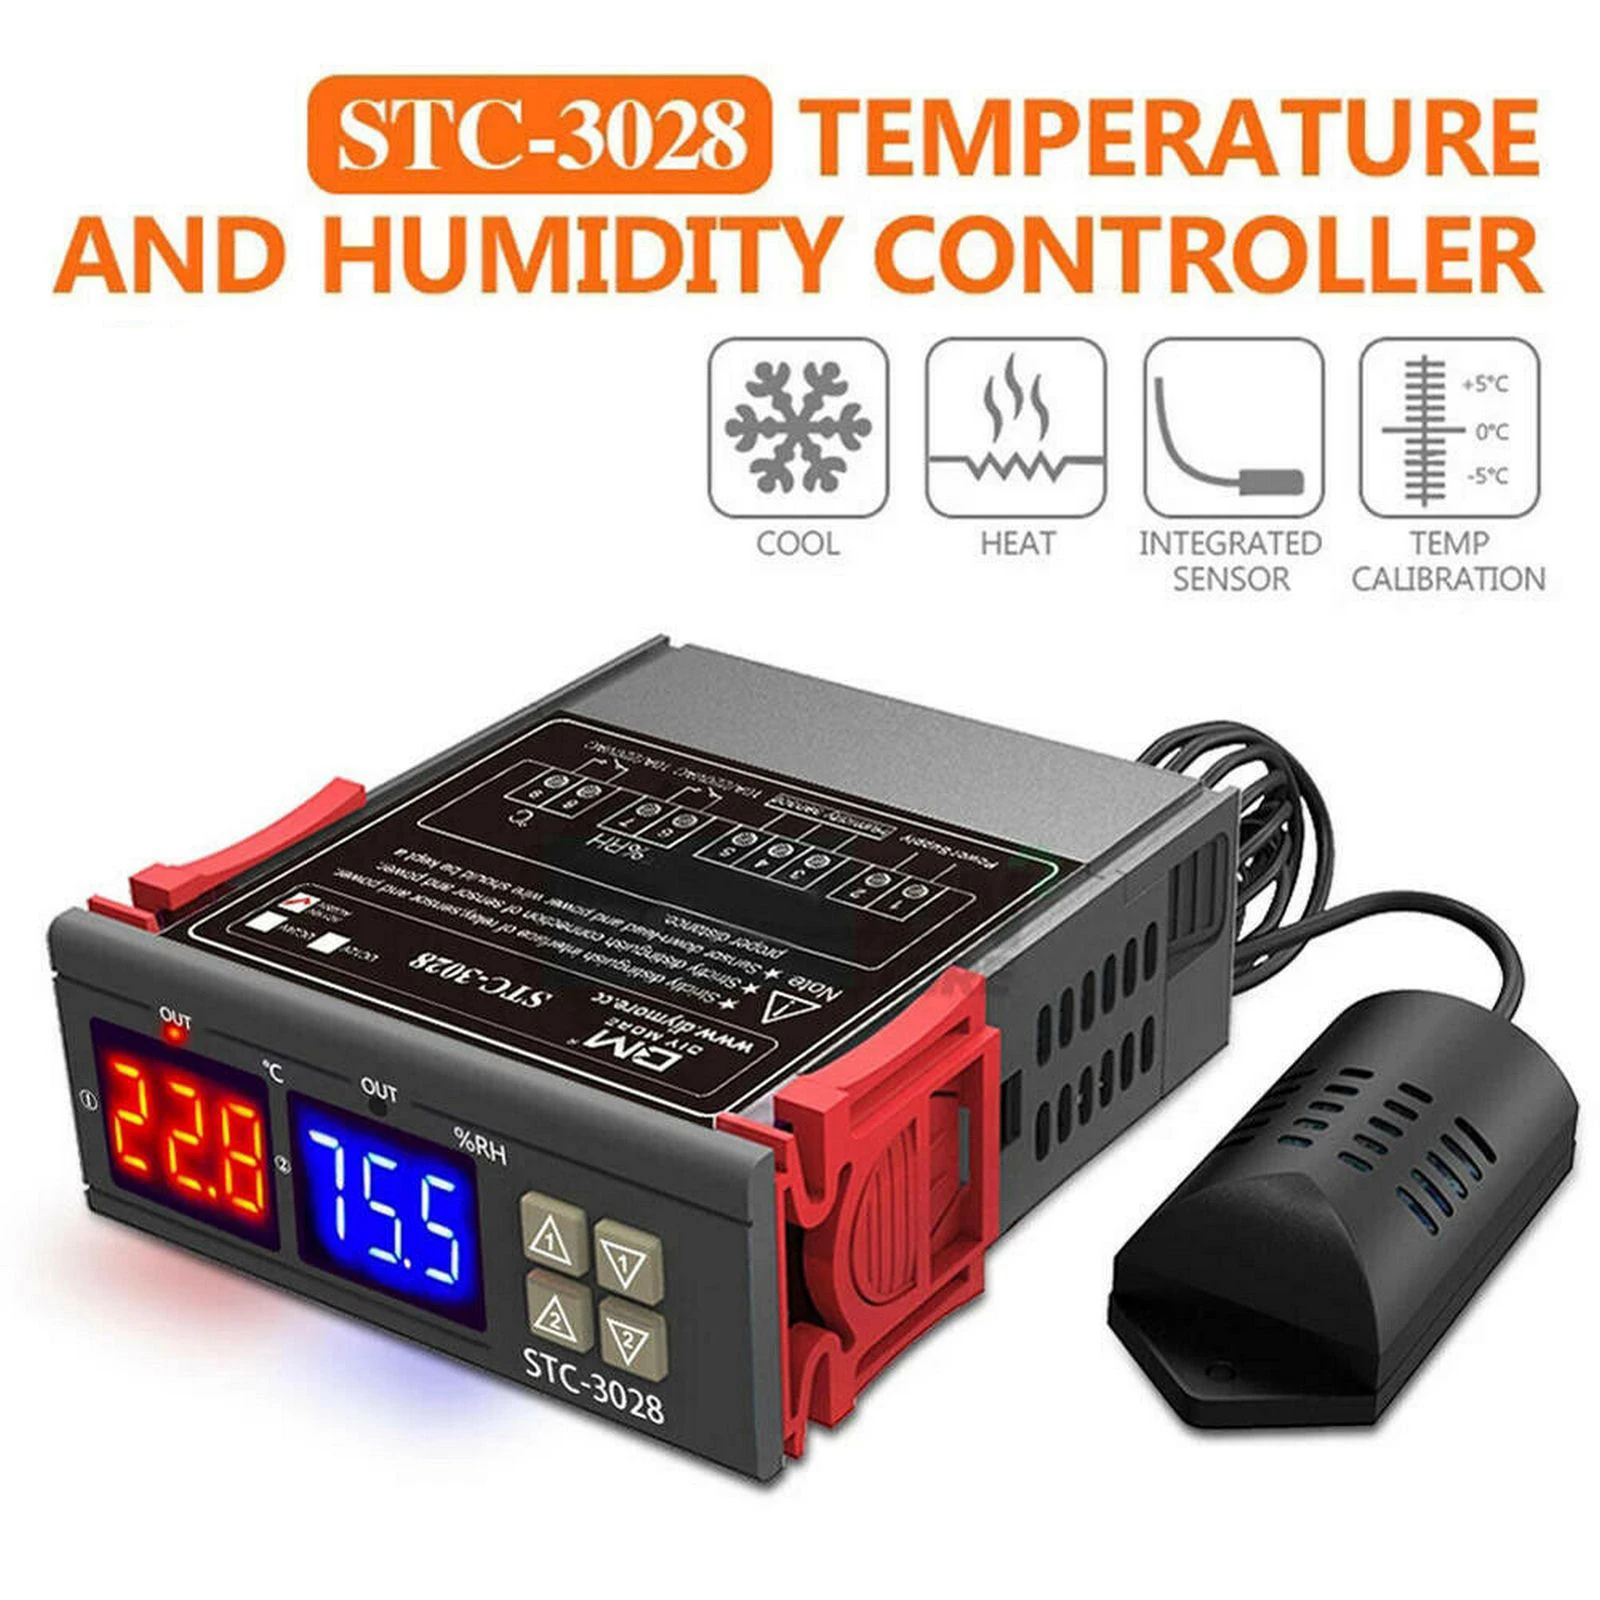 STC-3028 Digital Thermostat Hygrostat Temperature Humidity Controller Regulator Heating Cooling Control AC 110V 220V DC 12V 24V